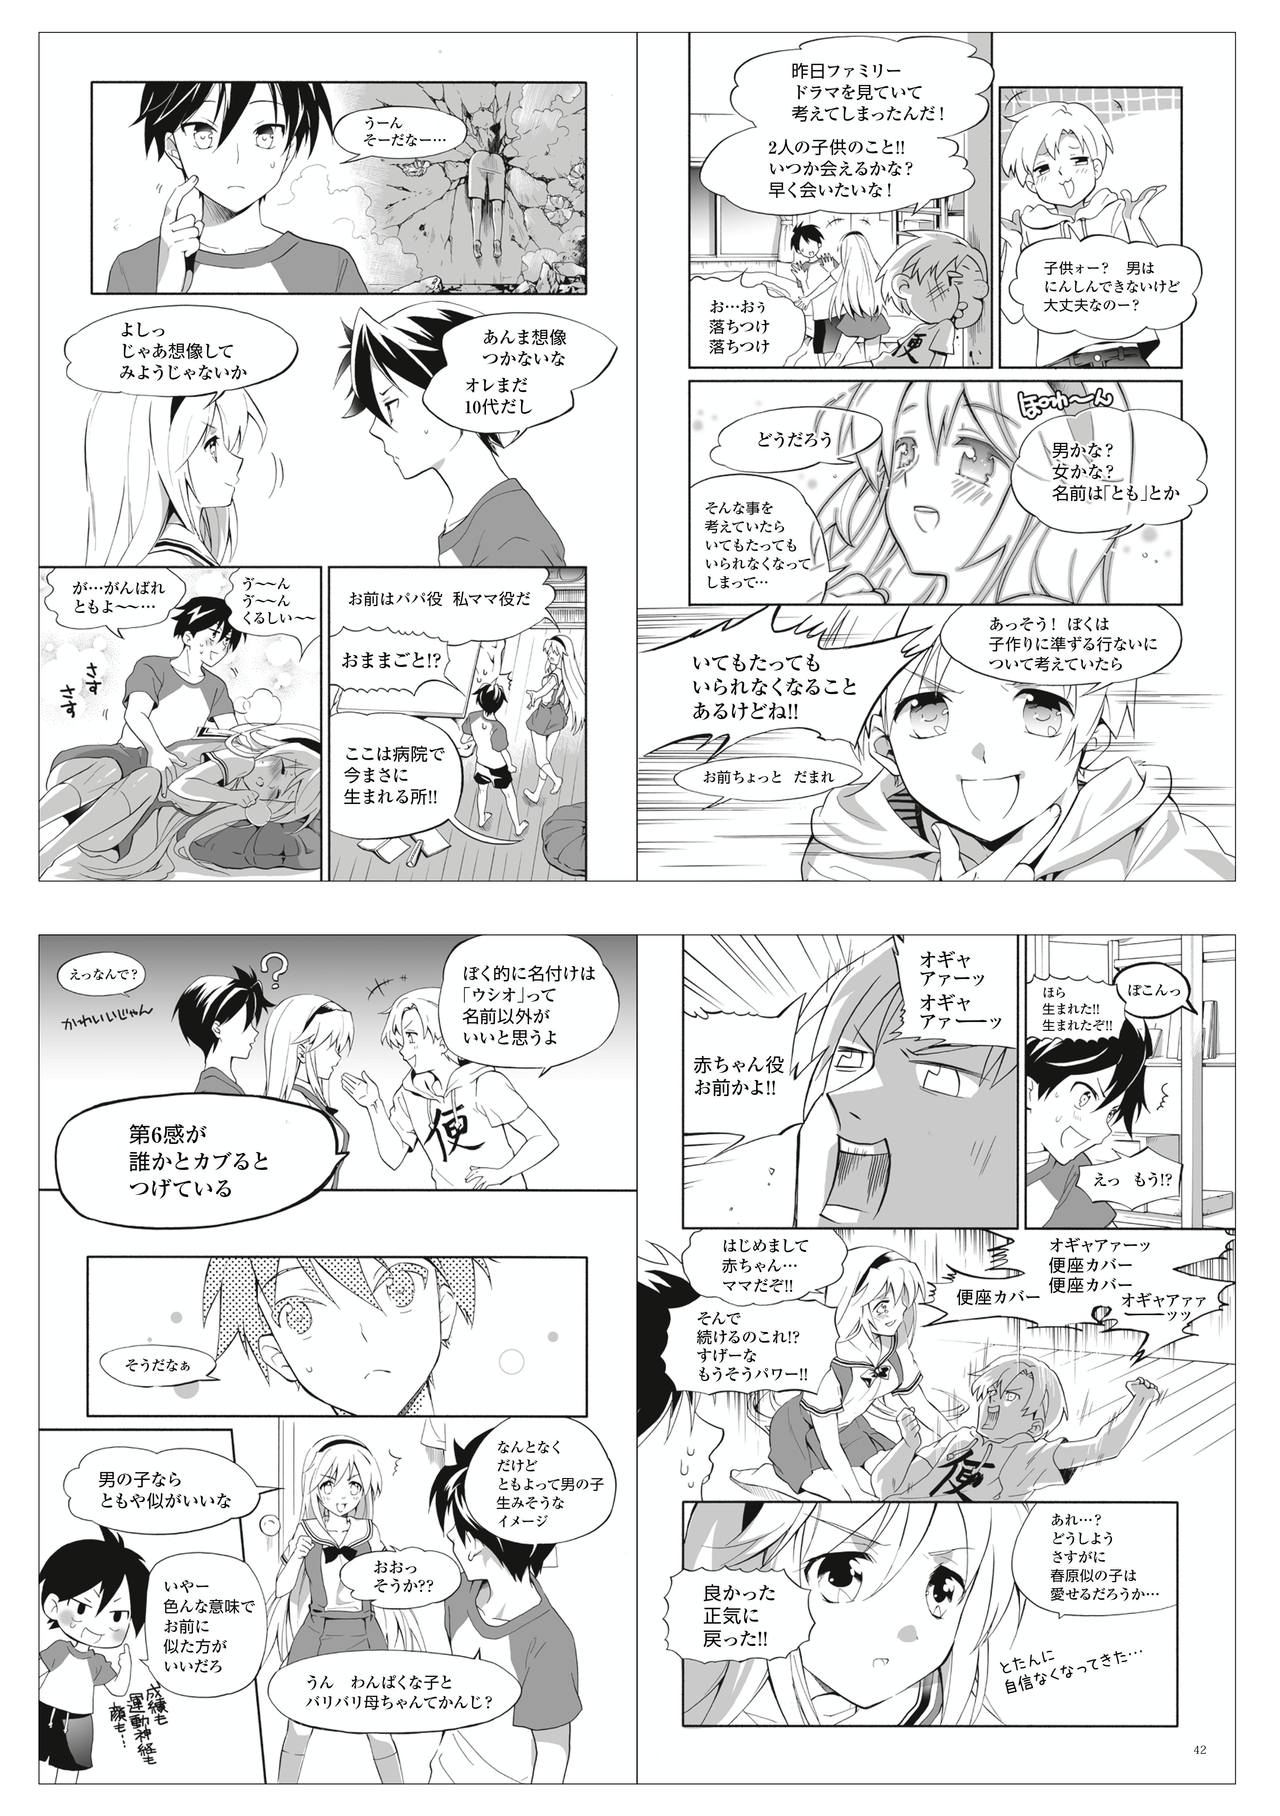 CLANNAD - Anthology Manga 65